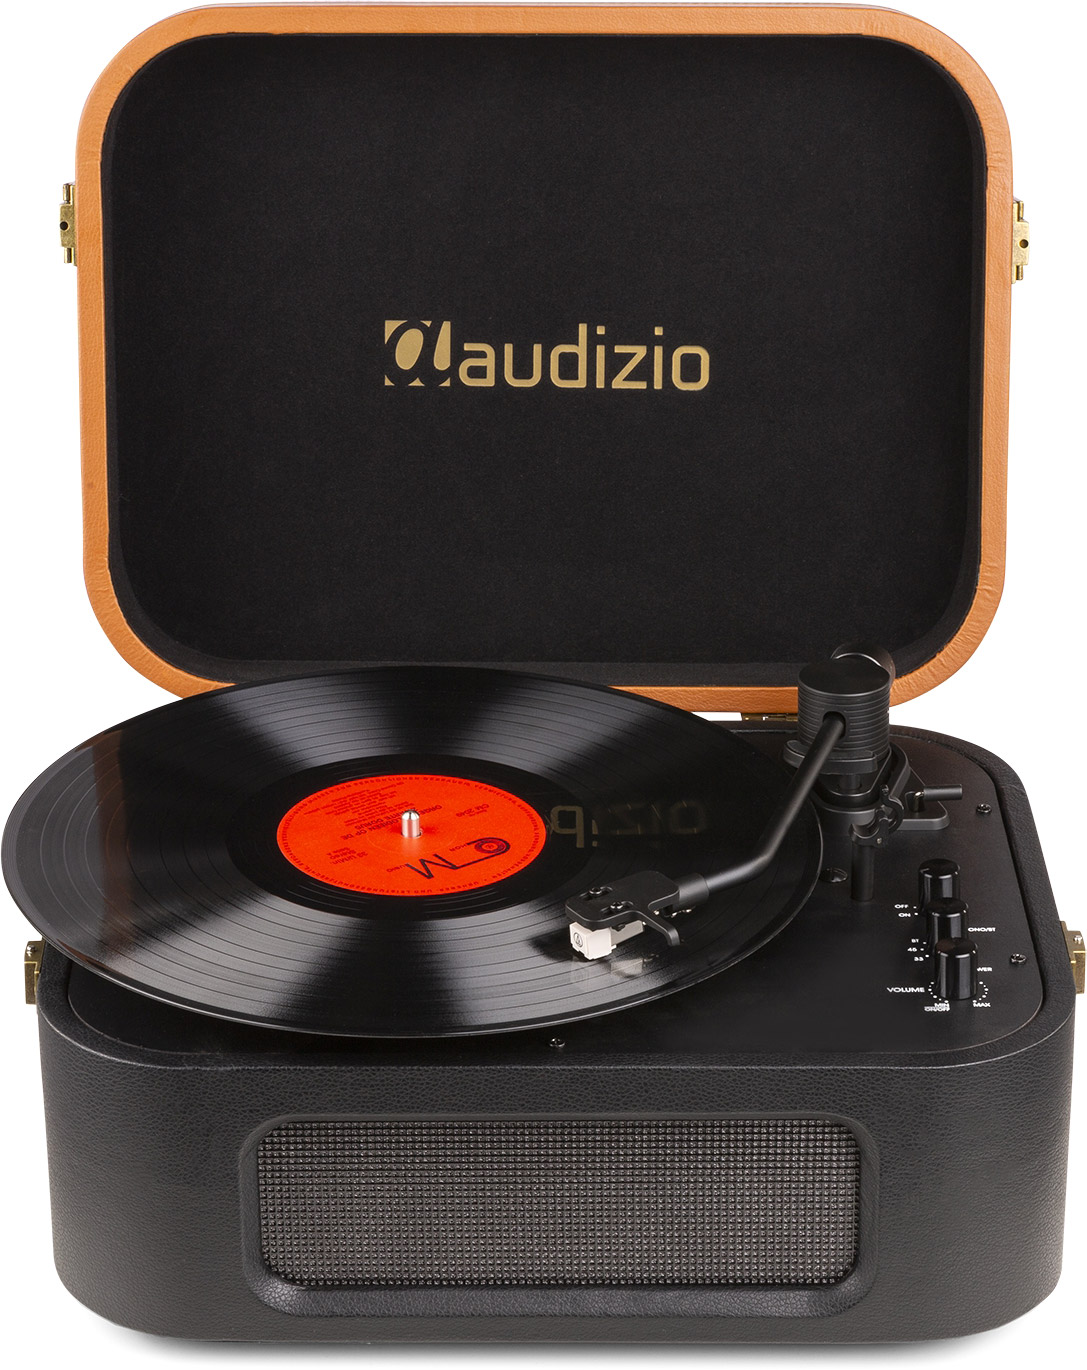 Audizio RP310 Platine Vinyle - Noir, Tourne-Disque avec Retour Automatique,  33 et 45 Tours, Cellule Audio Technica, Sortie HiFi RCA, Idéale pour